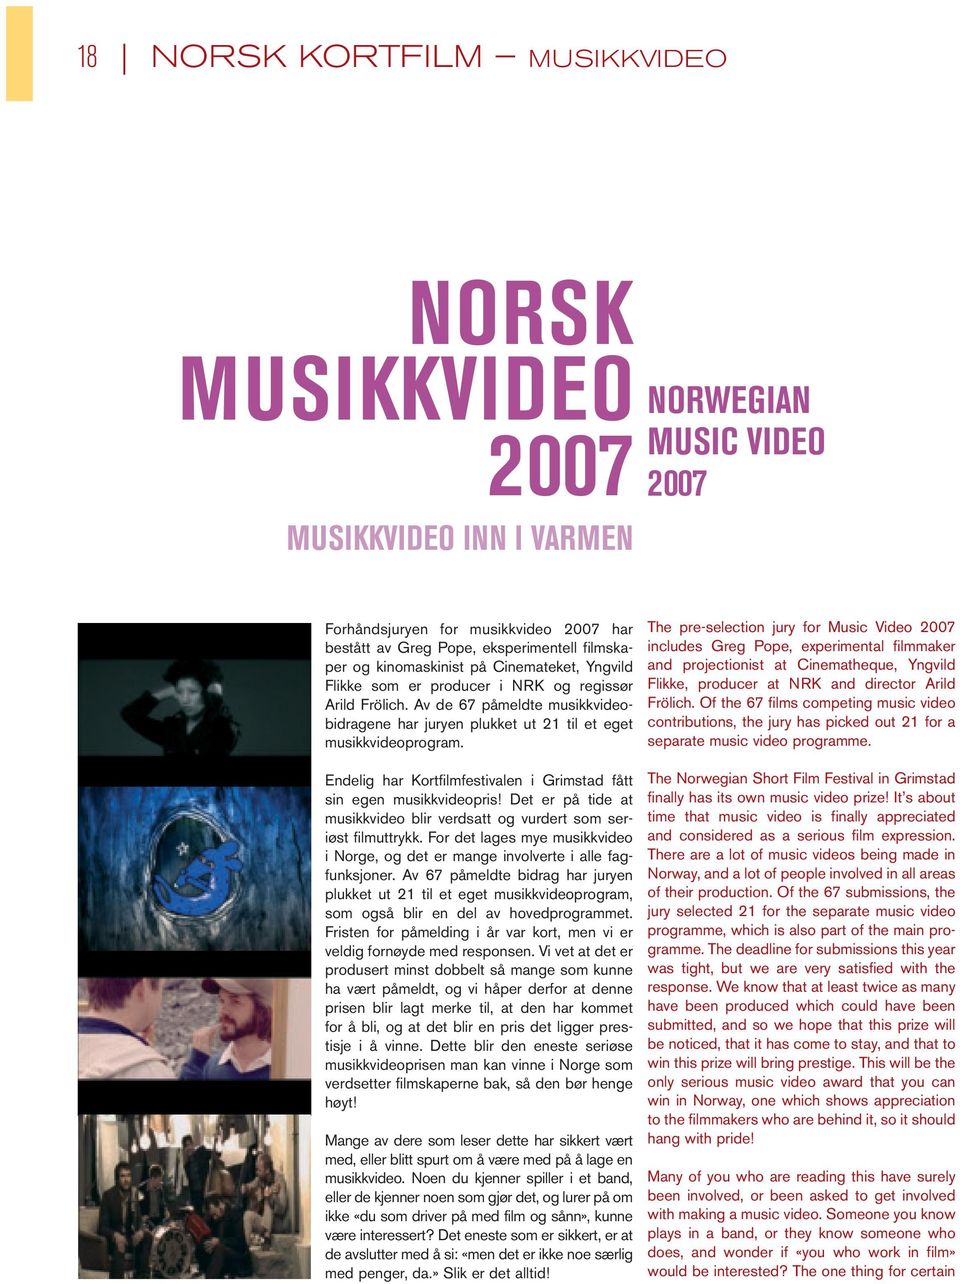 Endelig har Kortfilmfestivalen i Grimstad fått sin egen musikkvideopris! Det er på tide at musikkvideo blir verdsatt og vurdert som seriøst filmuttrykk.